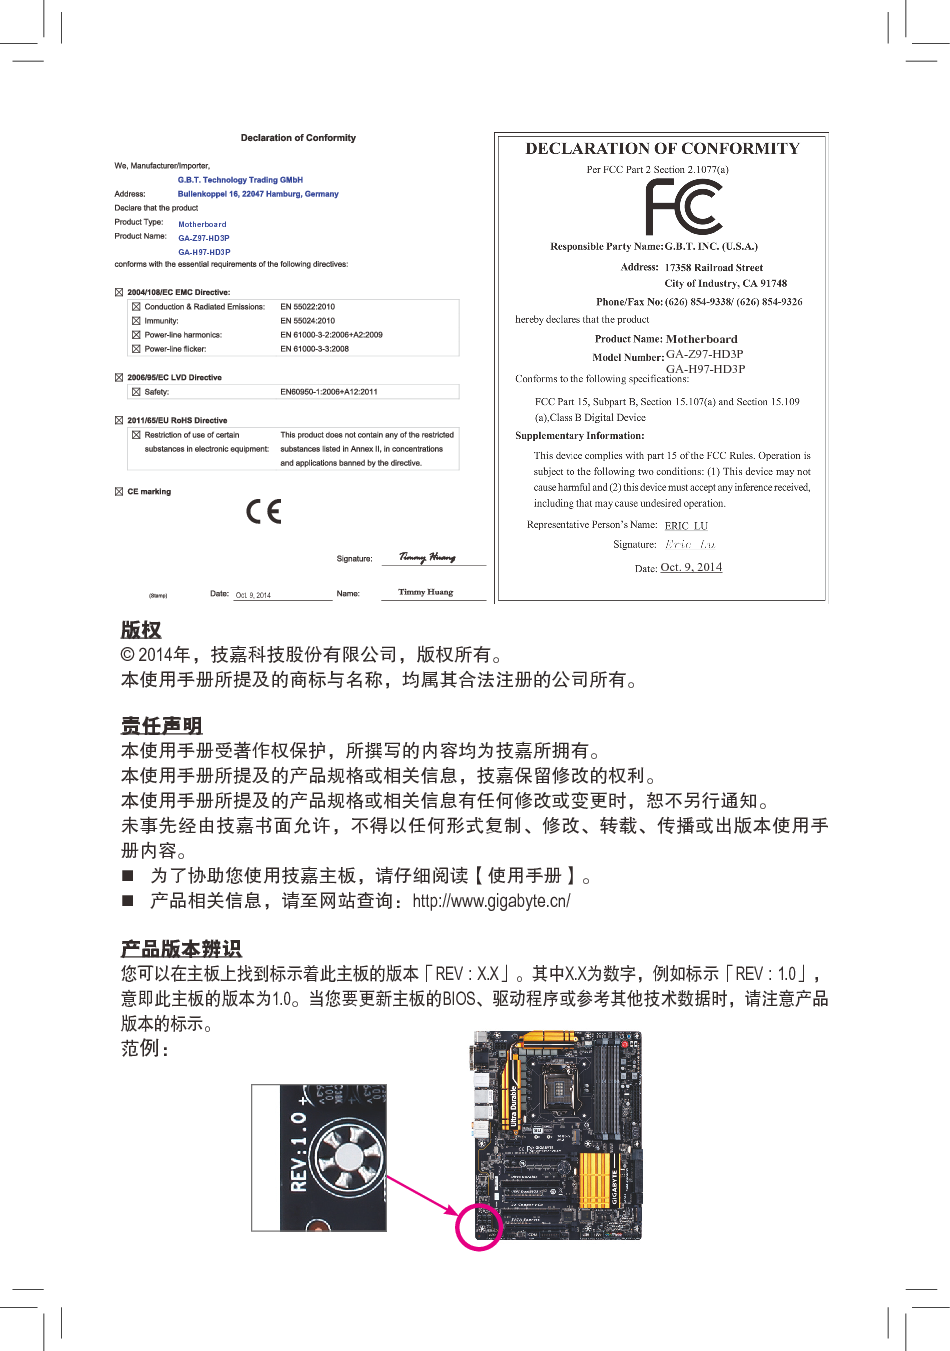 技嘉 Gigabyte GA-Z97-HD3P 使用说明书 第1页